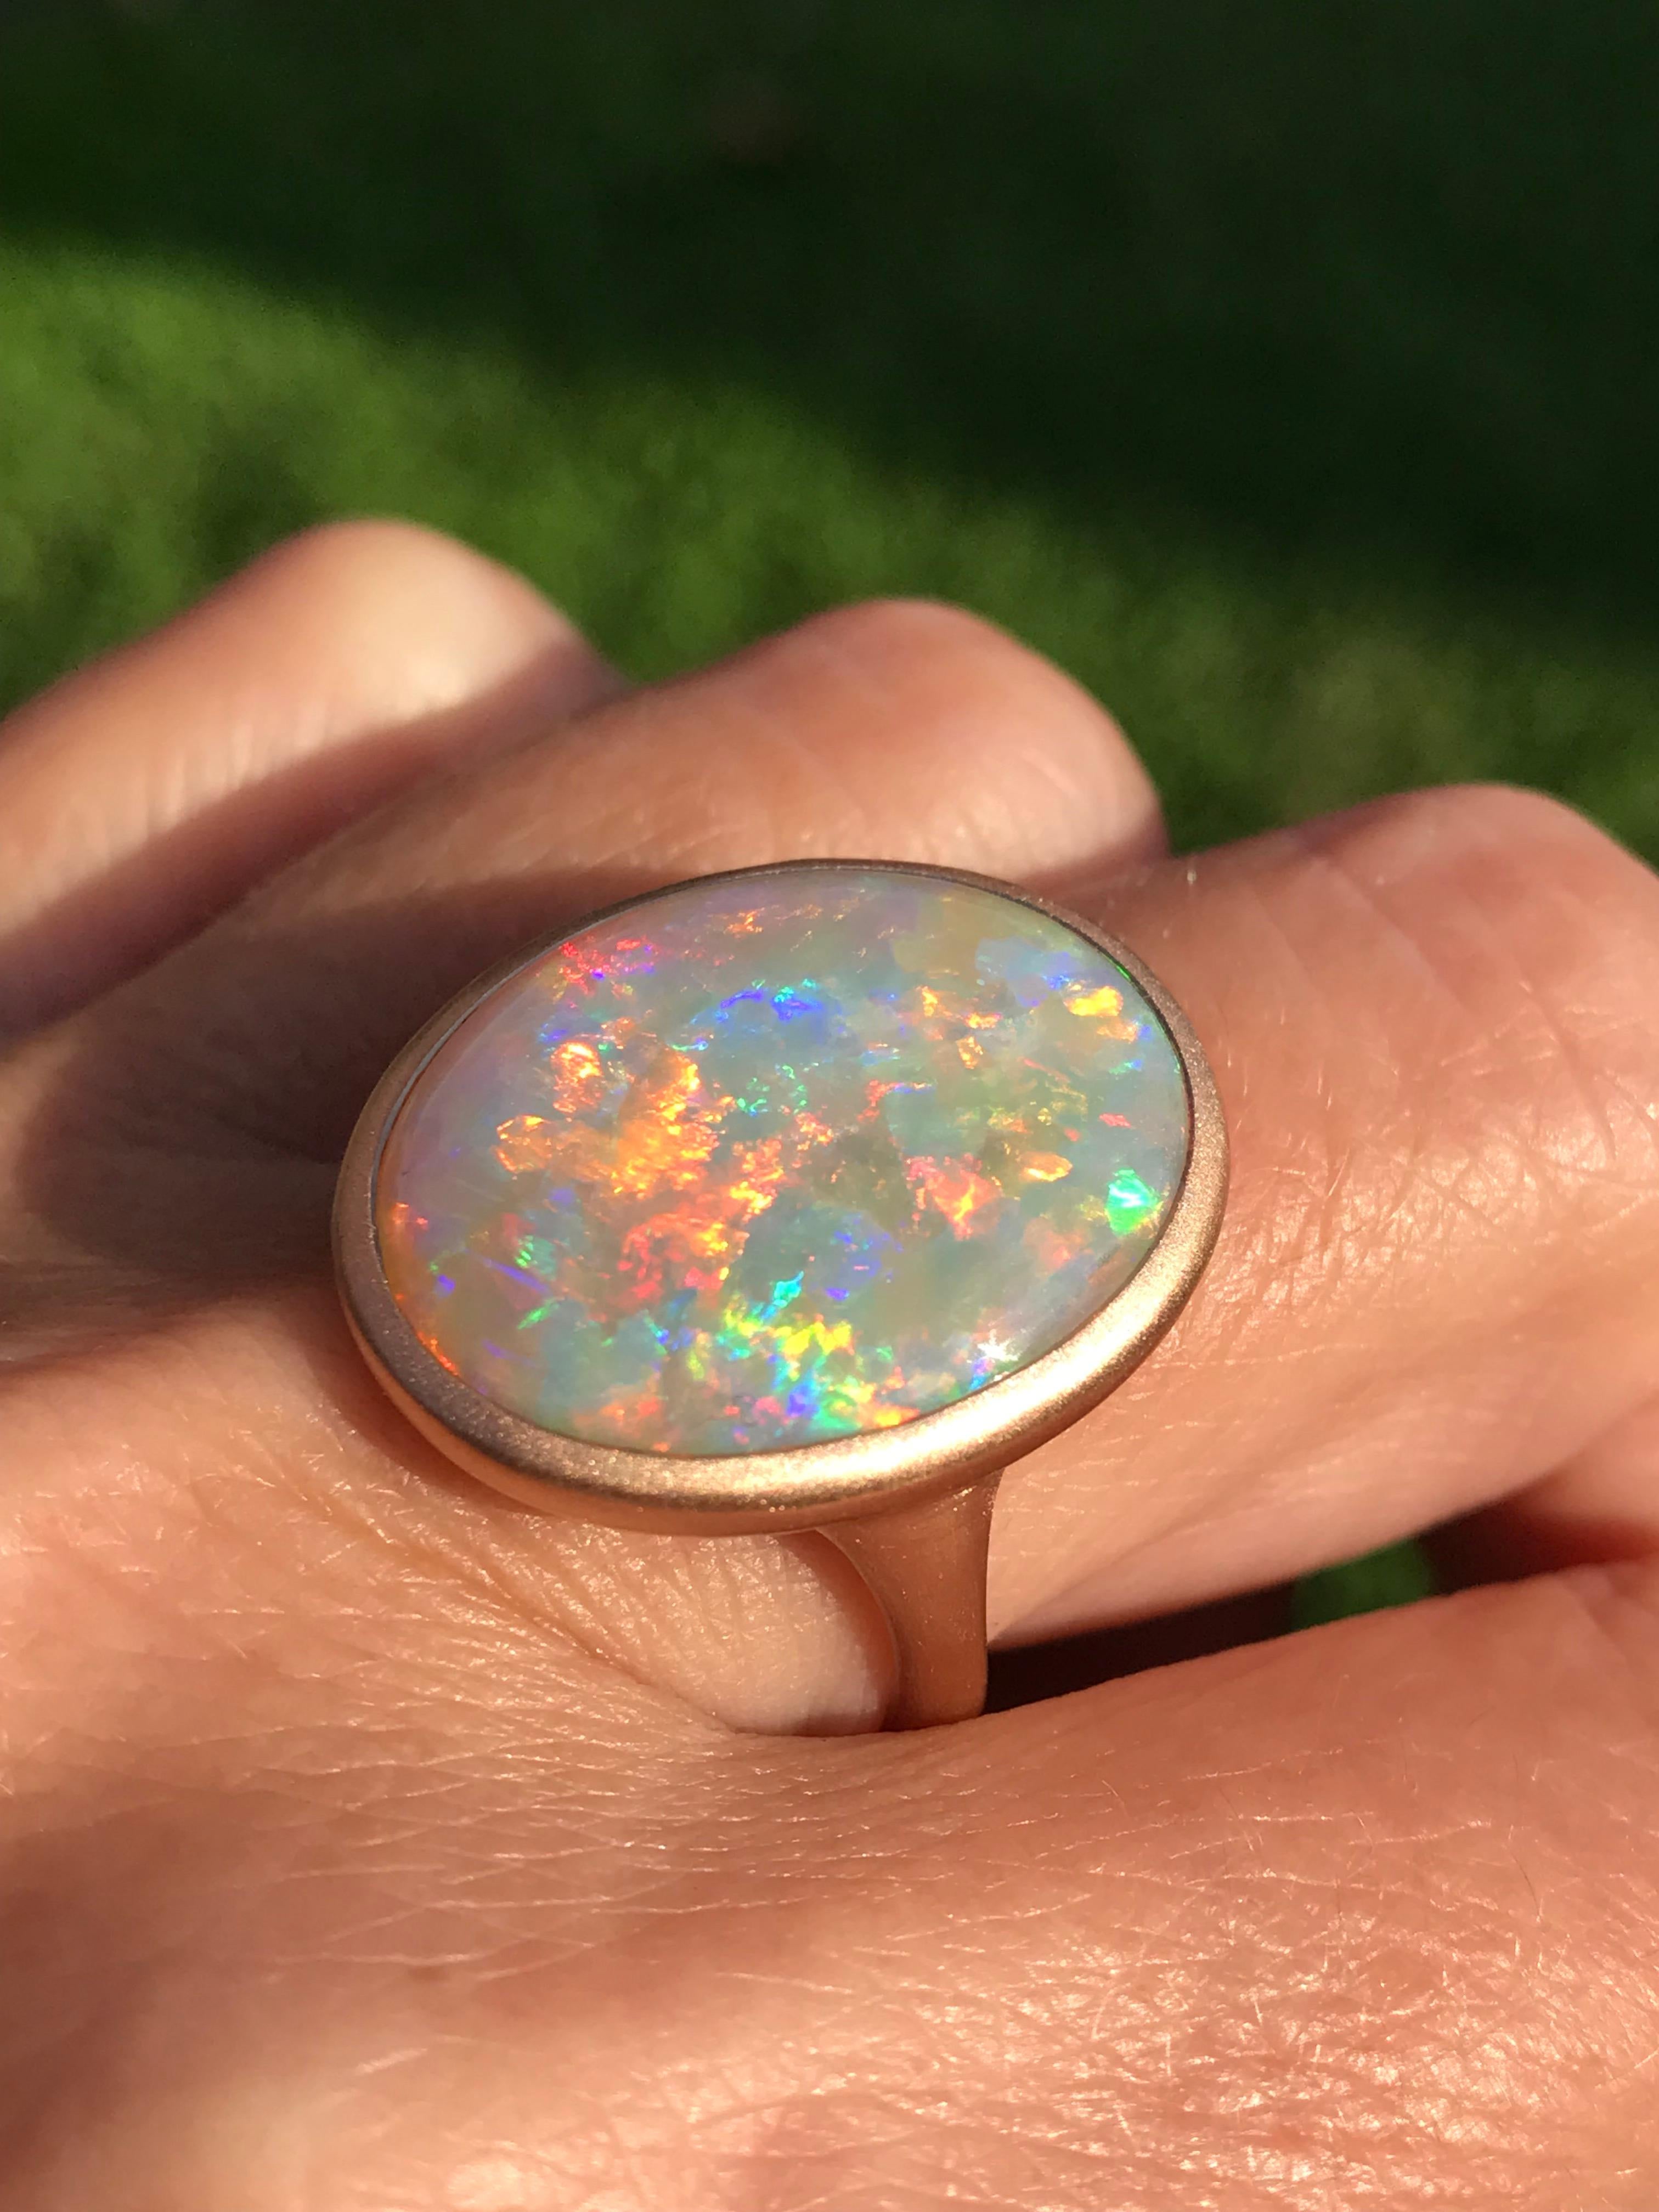 Dalben Design 18k Roségold satiniert Ring mit einem  10,35 Karat ovaler Kristallopal in Lünettenfassung von Coober Pedy, Australien. 
Dieser wunderbare australische Opal hat ein Kaleidoskop von schillernden Farben.
Ringgröße US  7 1/2 - EU 55 mit